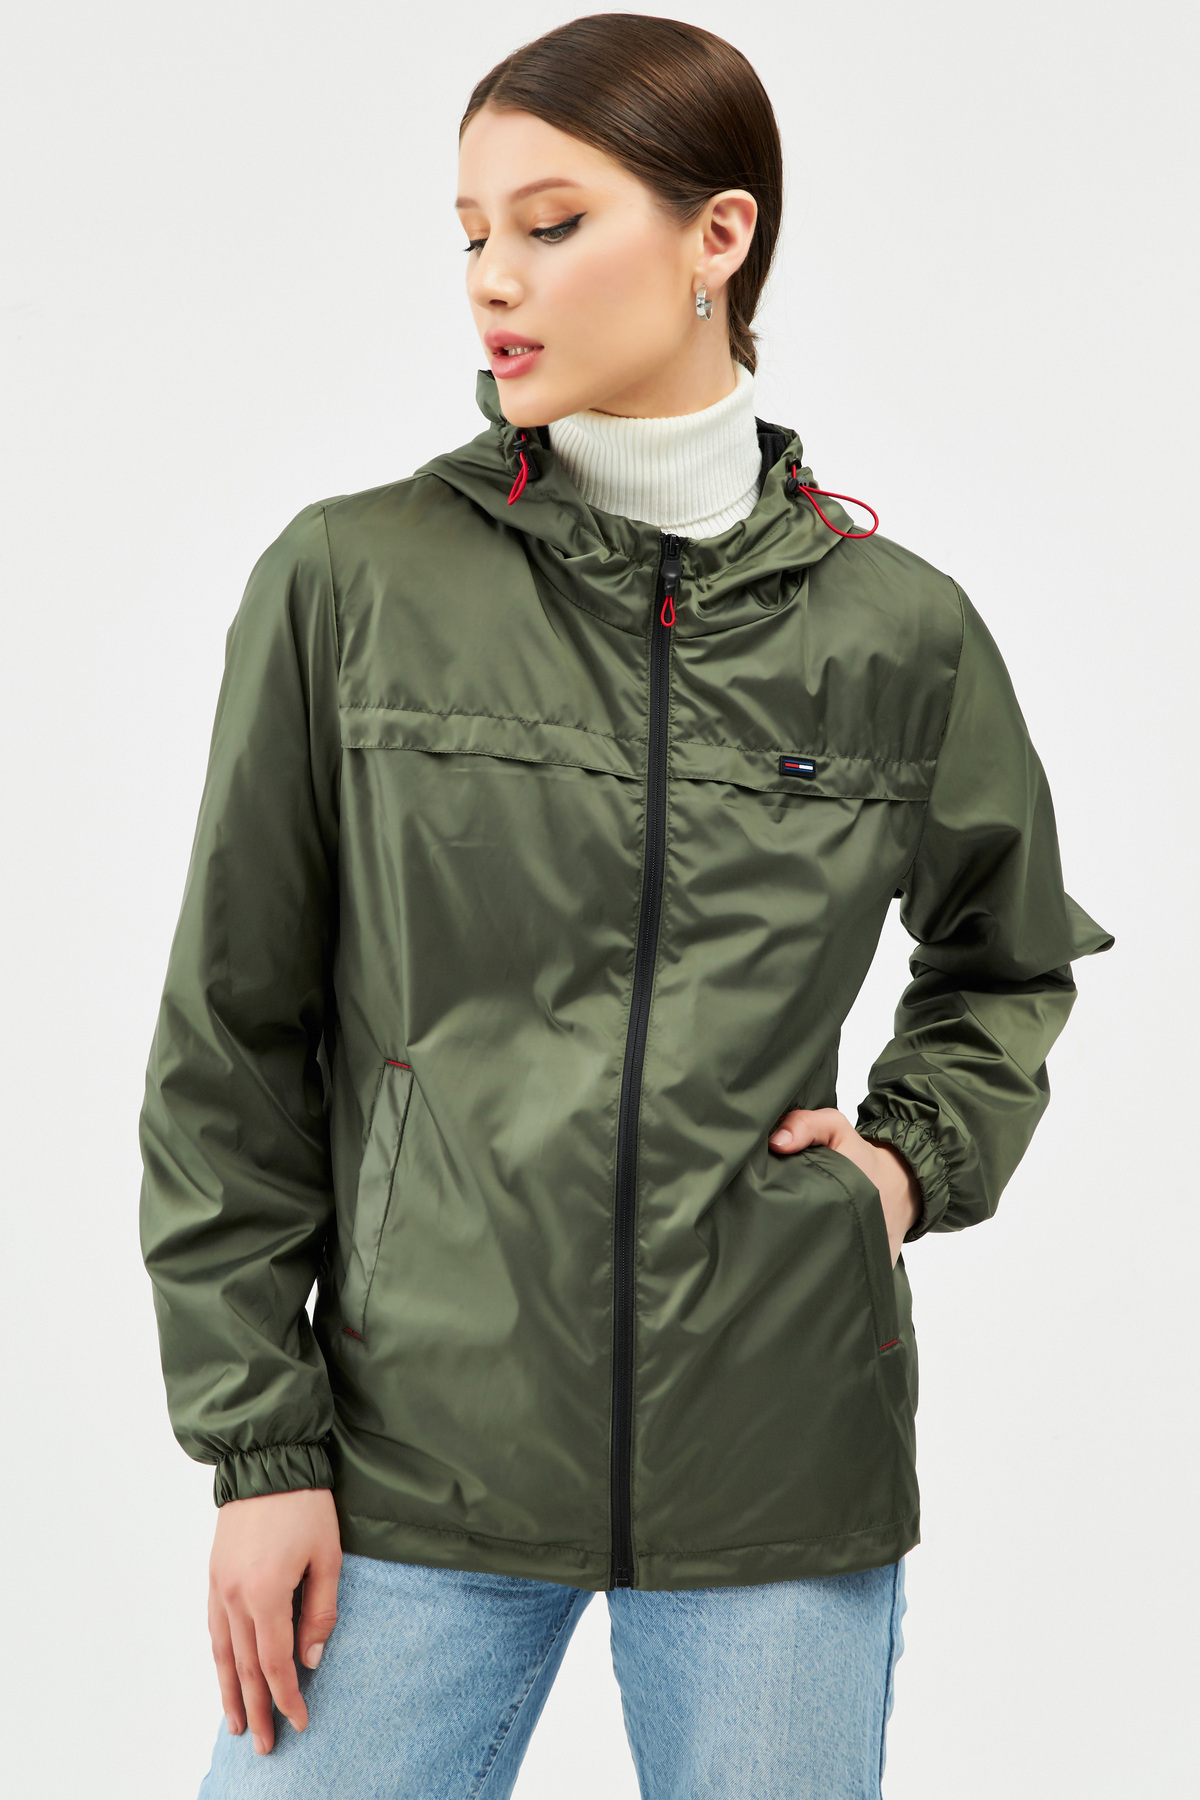 Levně River Club Dámské Khaki nepromokavá pláštěnka s kapucí s vnitřní podšívkou a kapsou - Windbreaker Jacket